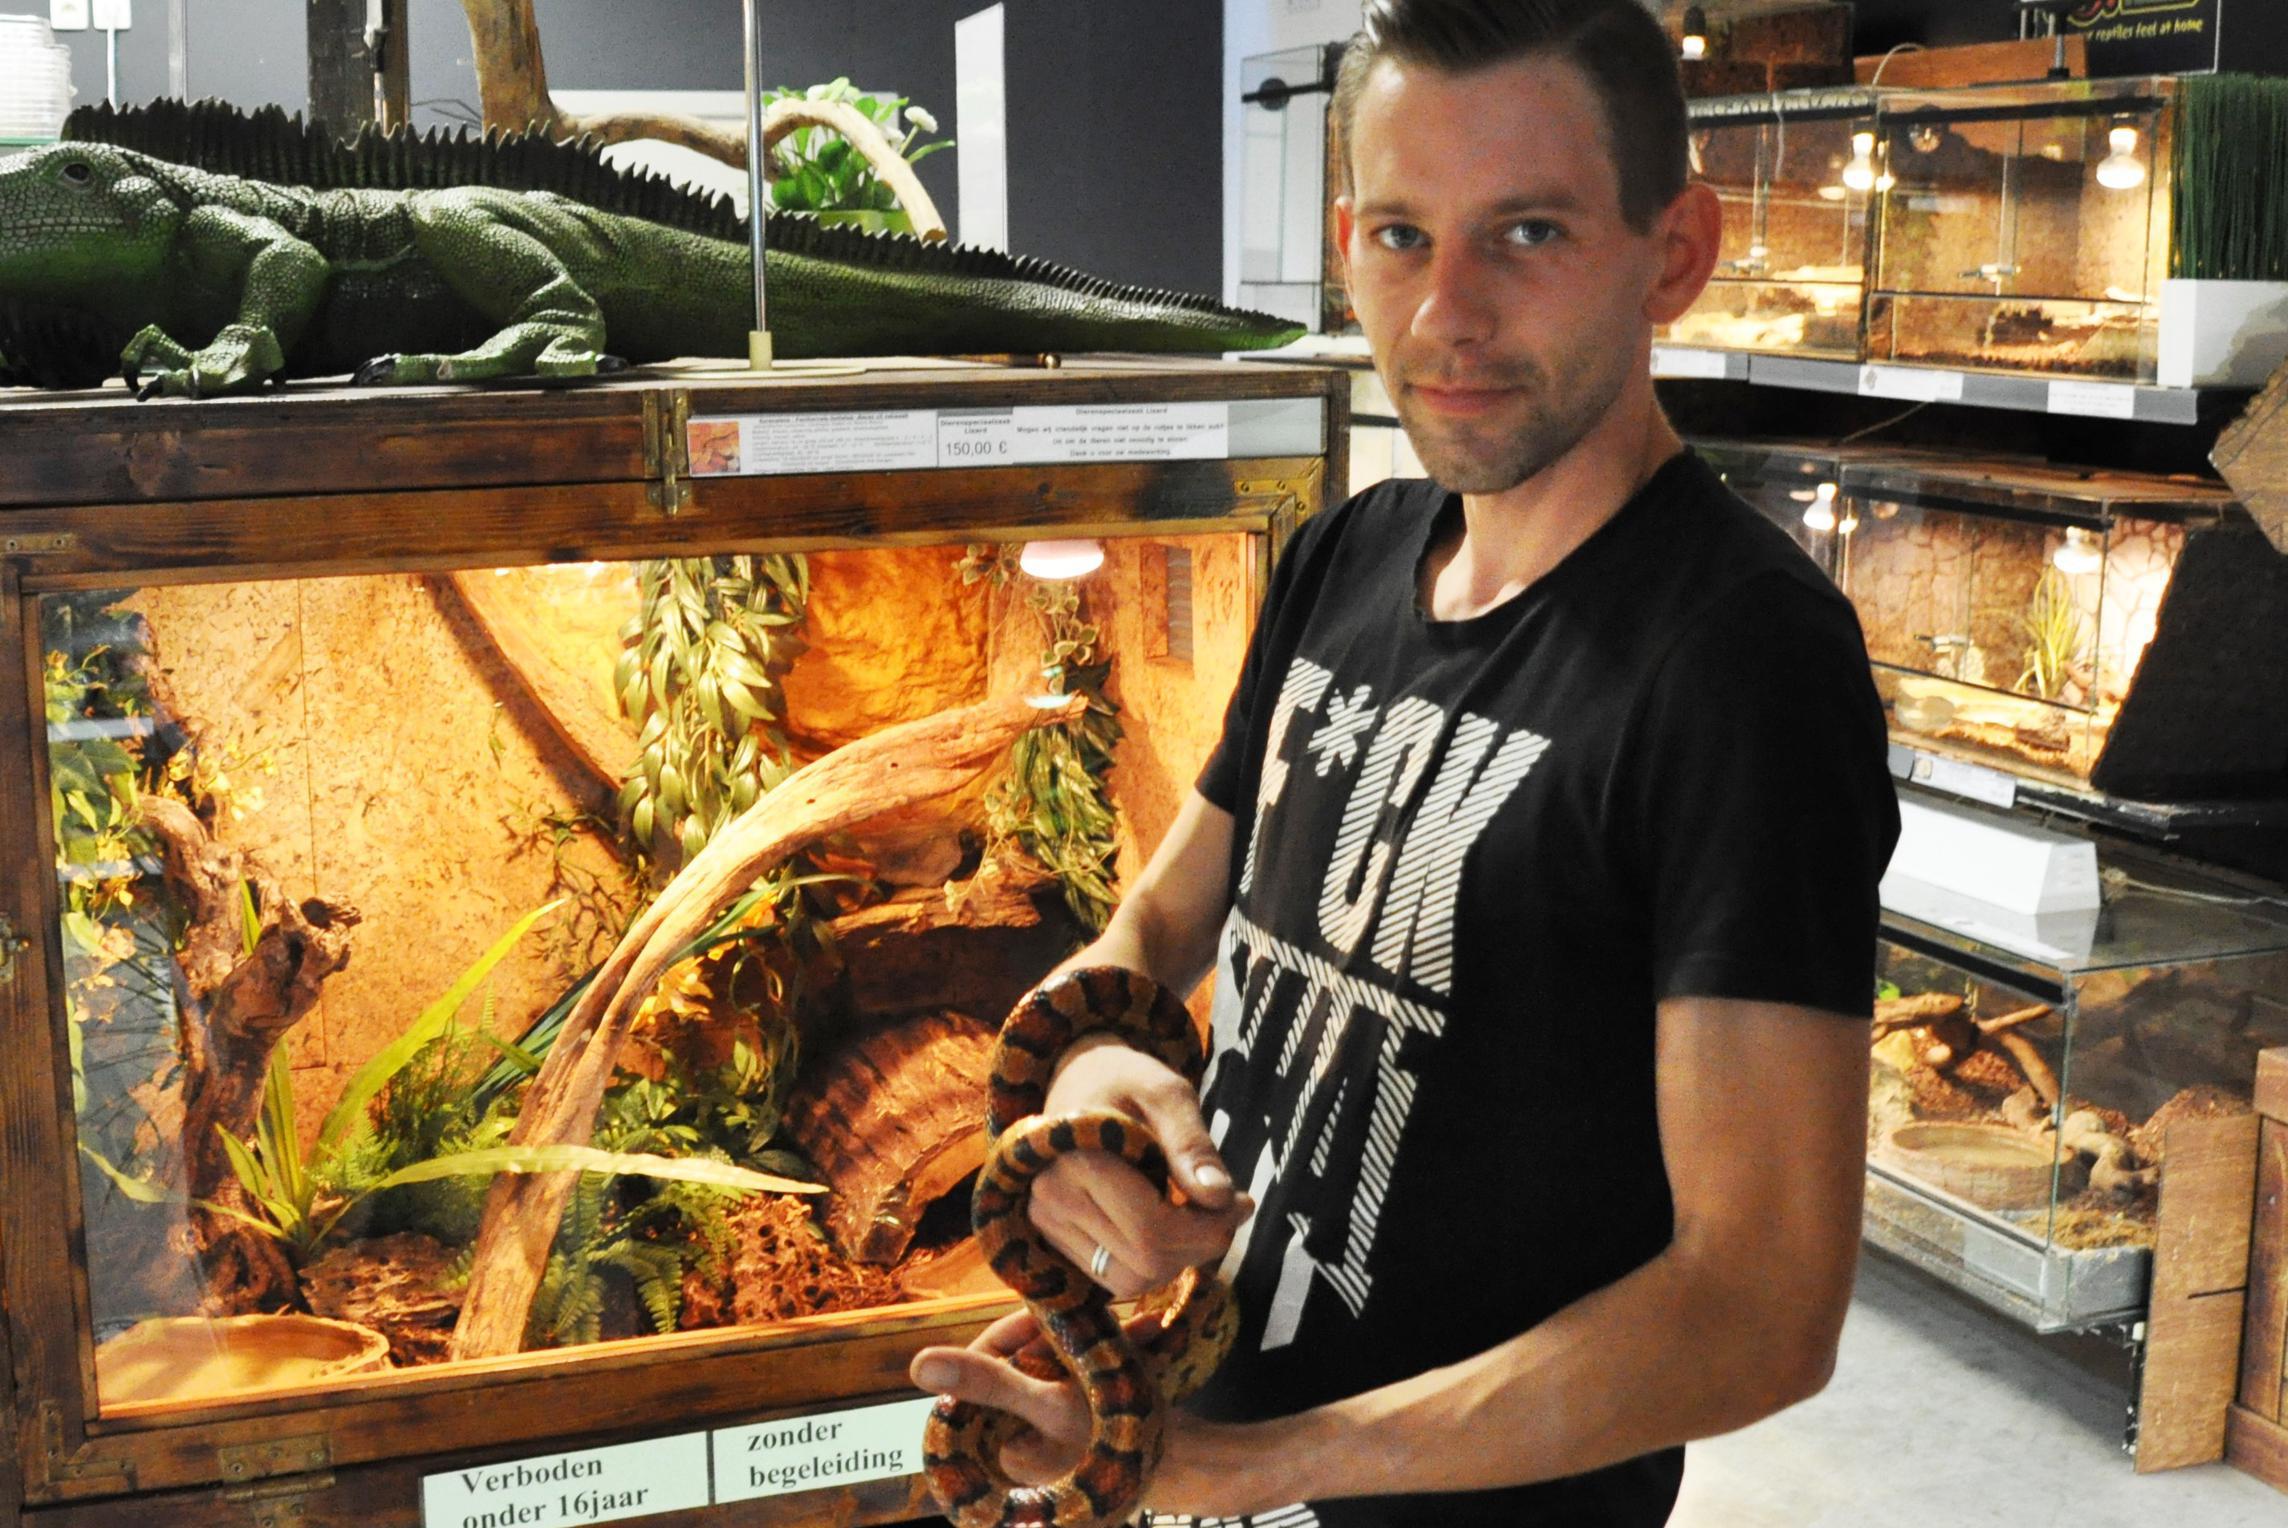 dek bagage Mislukking Jens (29) en Aron (38) openen dierenwinkel vol reptielen en amfibieën: “We  willen mensen behoeden voor impulsaankopen, slangen zijn geen  knuffeldieren” | Gazet van Antwerpen Mobile